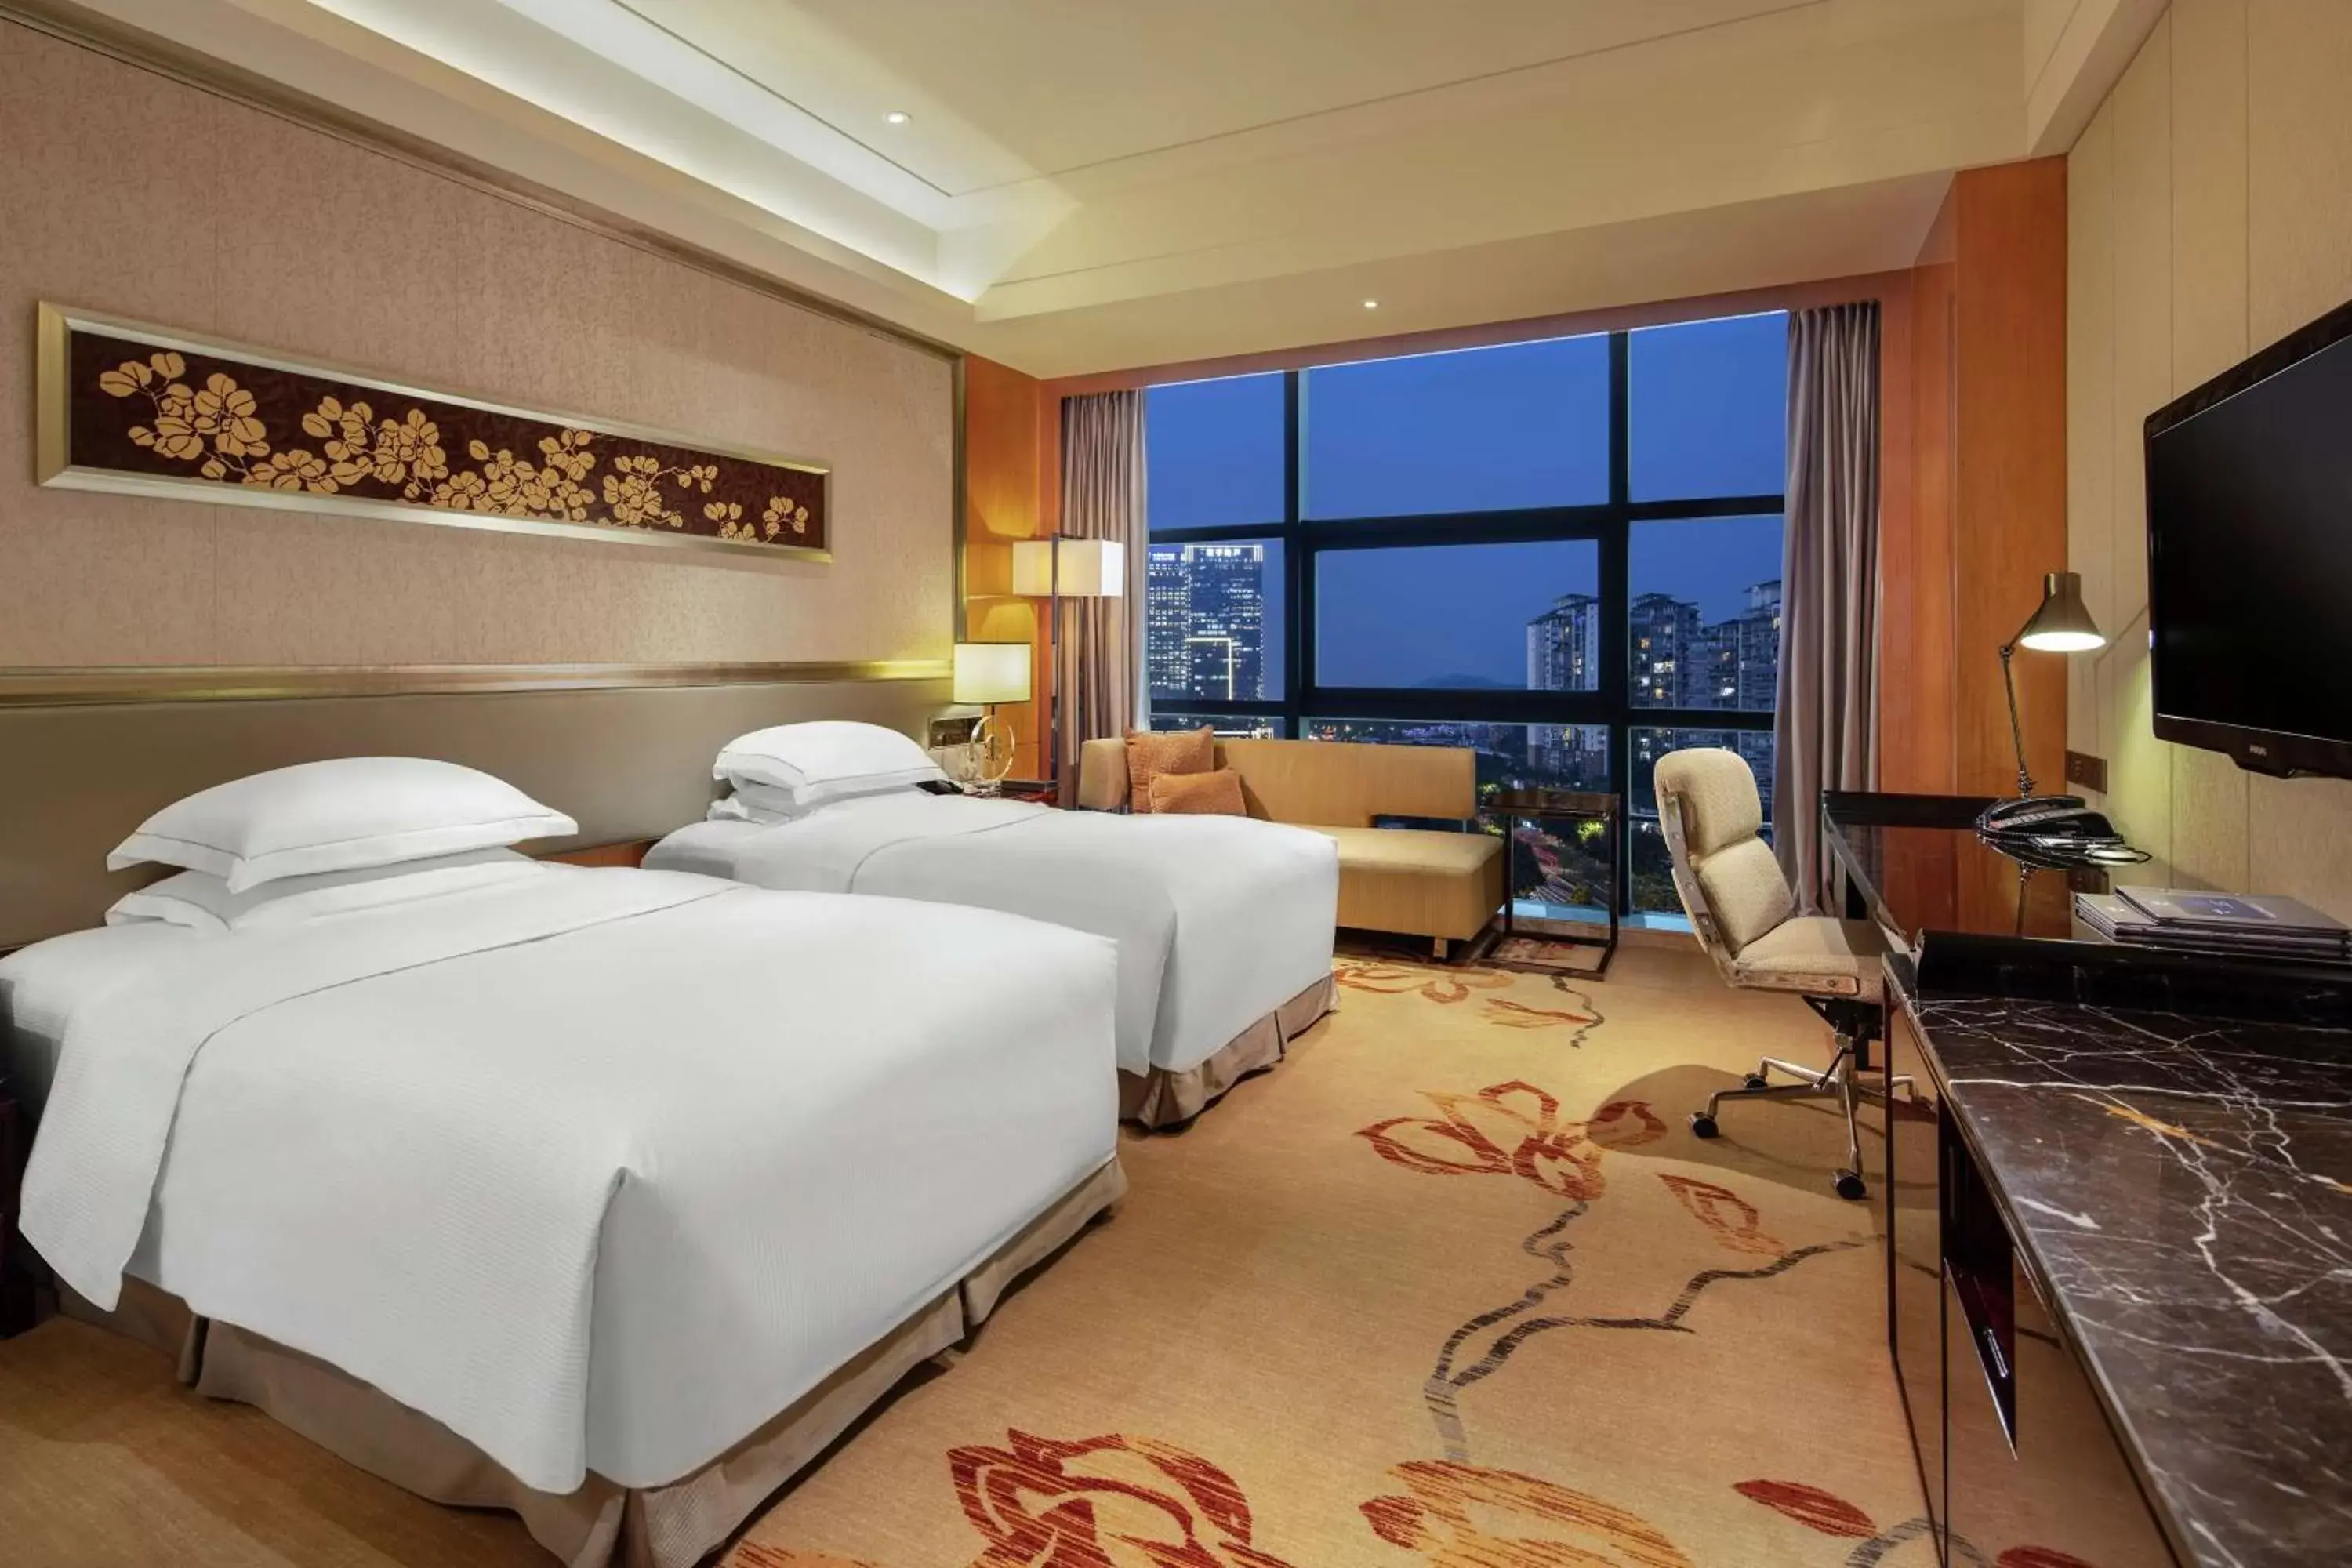 Bedroom in Hilton Guangzhou Baiyun - Canton Fair Free Shuttle Bus